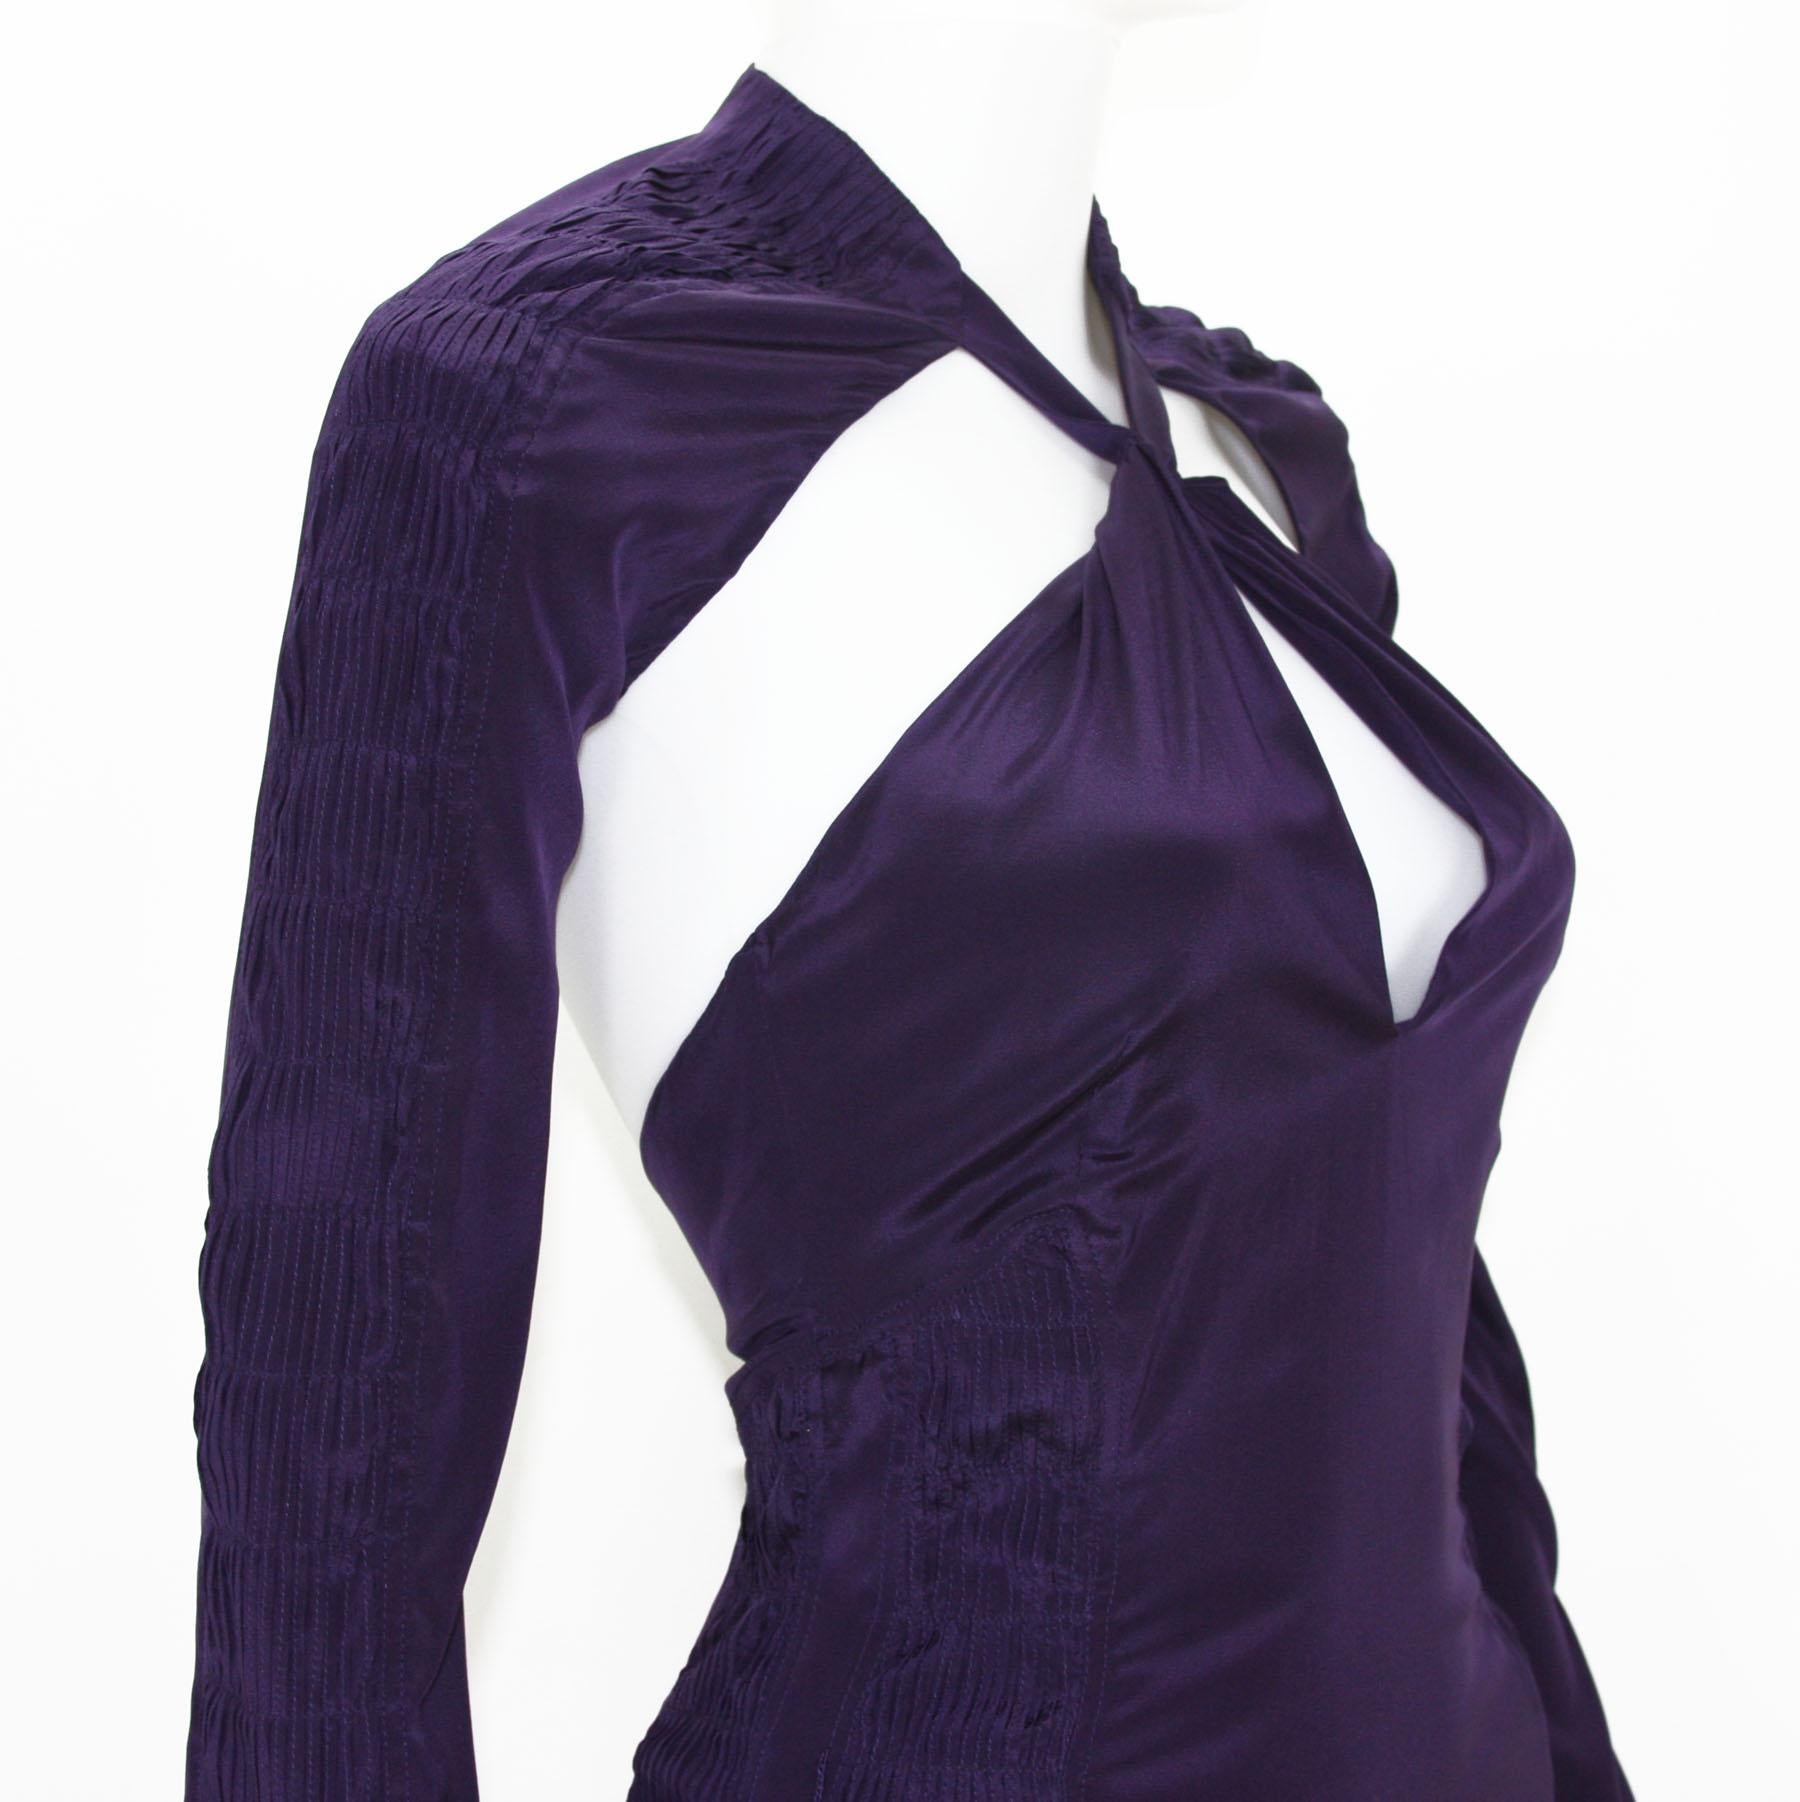 Tom Ford for Gucci, robe dos nu plongeant en soie violet profond, défilé P/É 2004, taille 38 et 44, neuve en vente 1